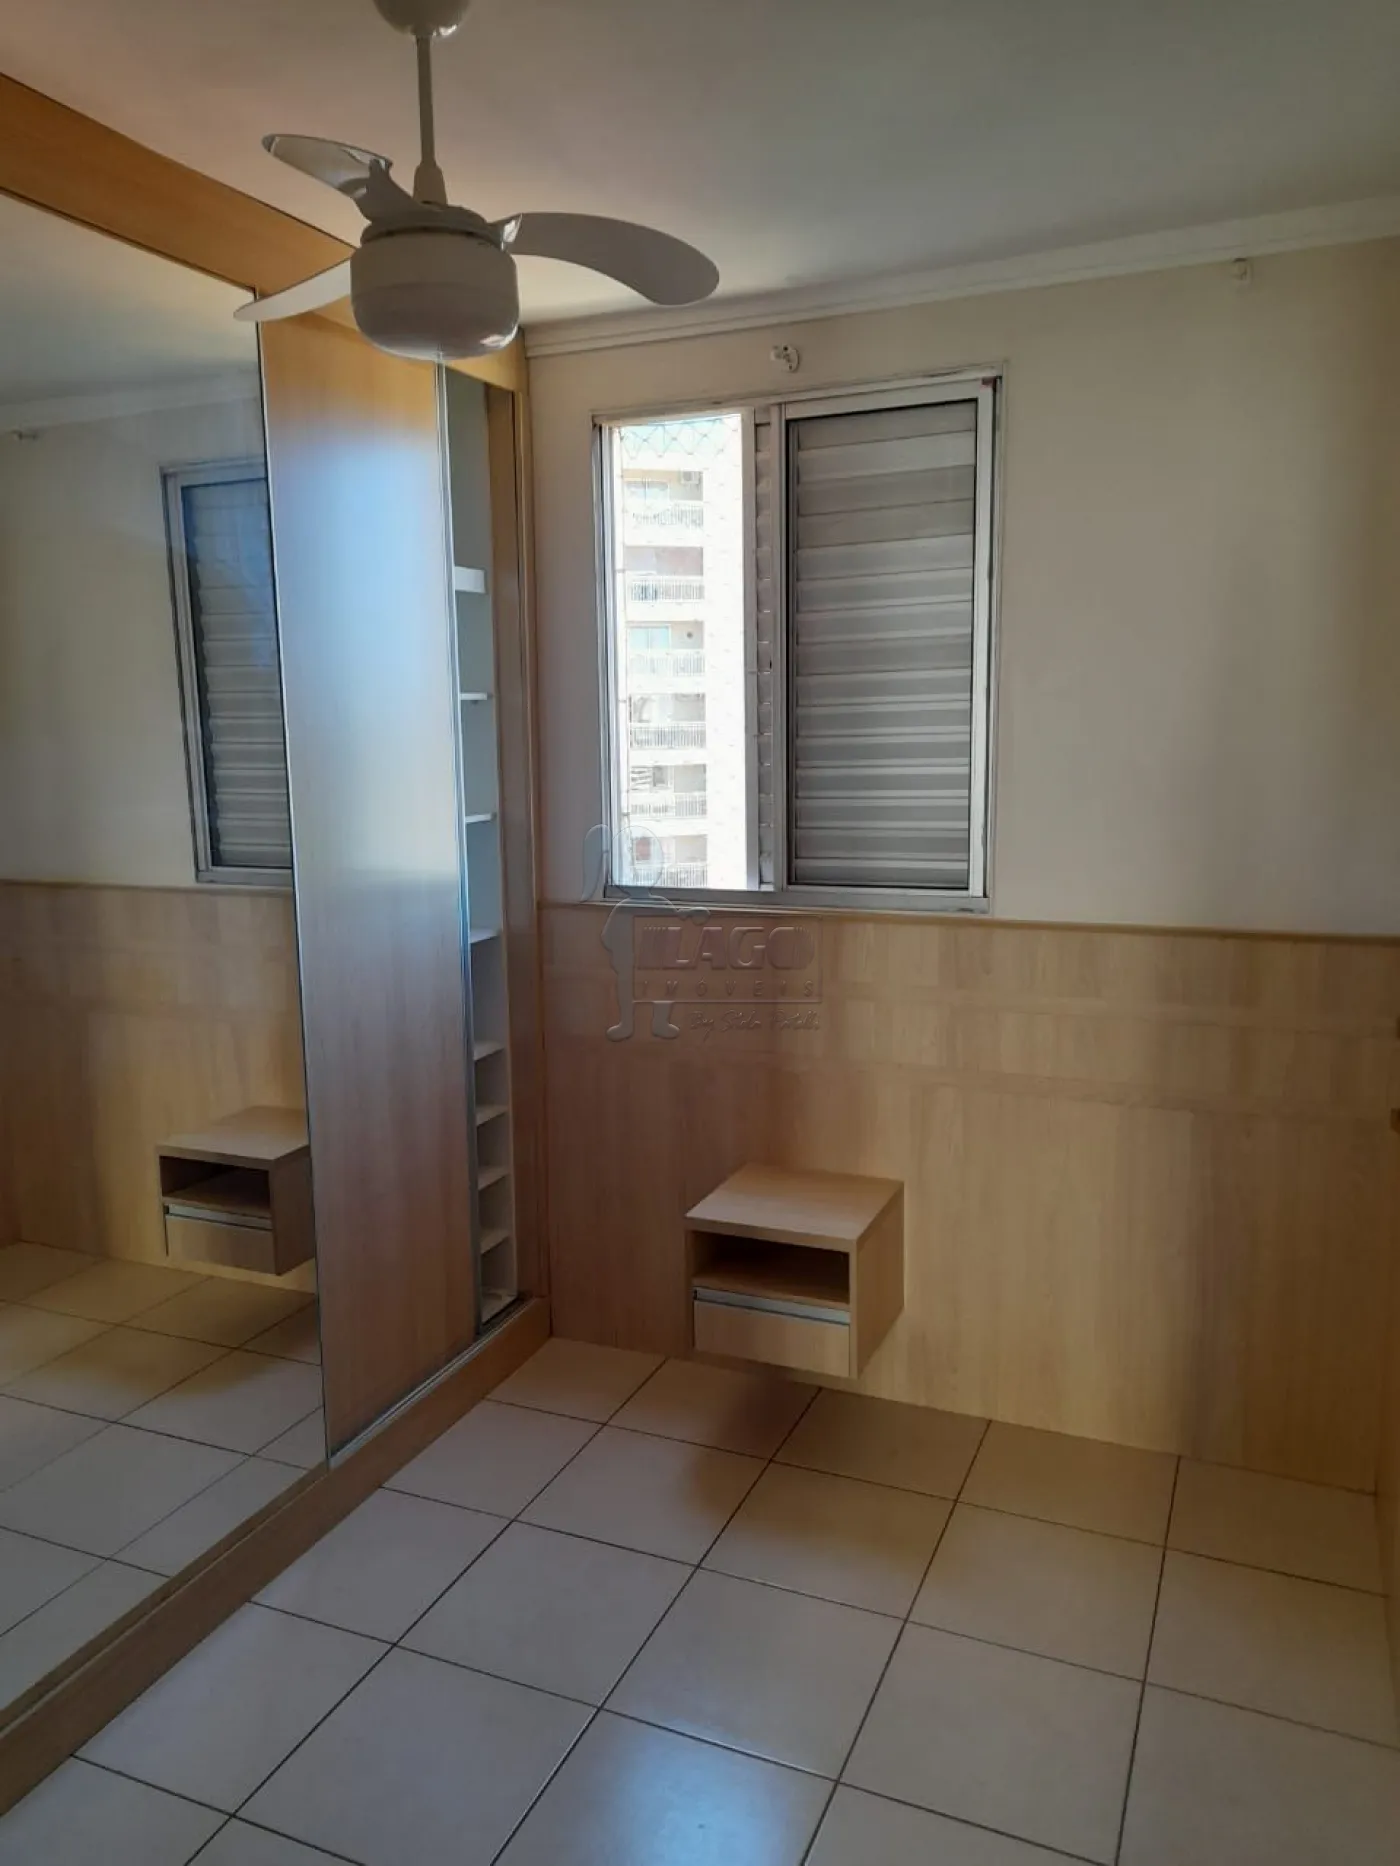 Alugar Apartamento / Padrão em Ribeirão Preto R$ 2.500,00 - Foto 8